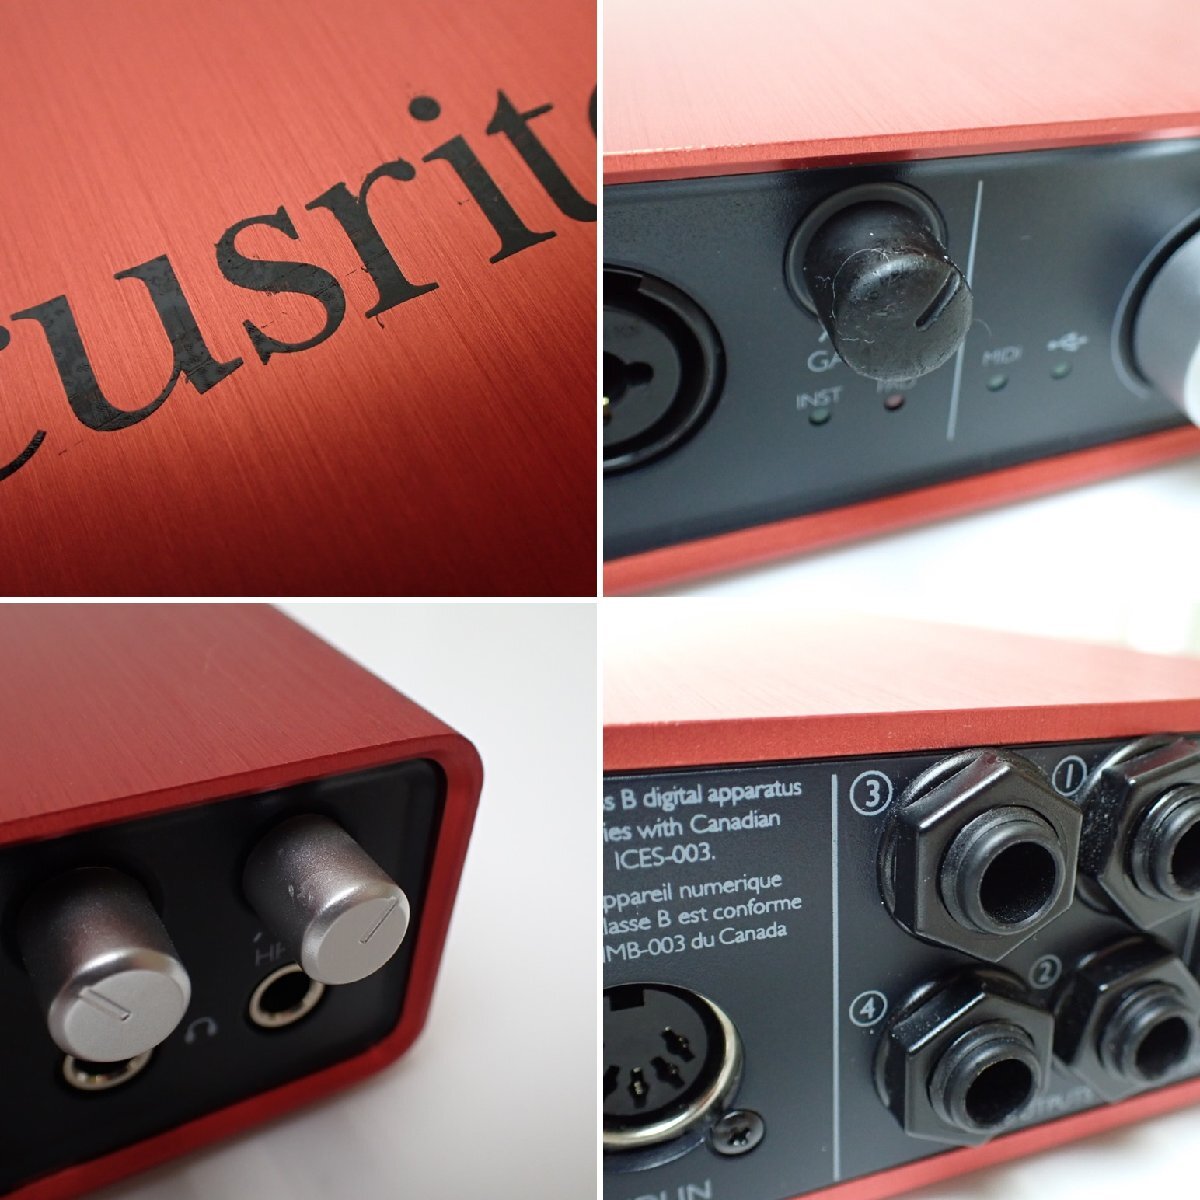 *Focusrite/ Focus свет Scarlett 6i6 G2 USB аудио интерфейс красный /2014 год производства / рабочий товар / орудия и материалы &1964000004